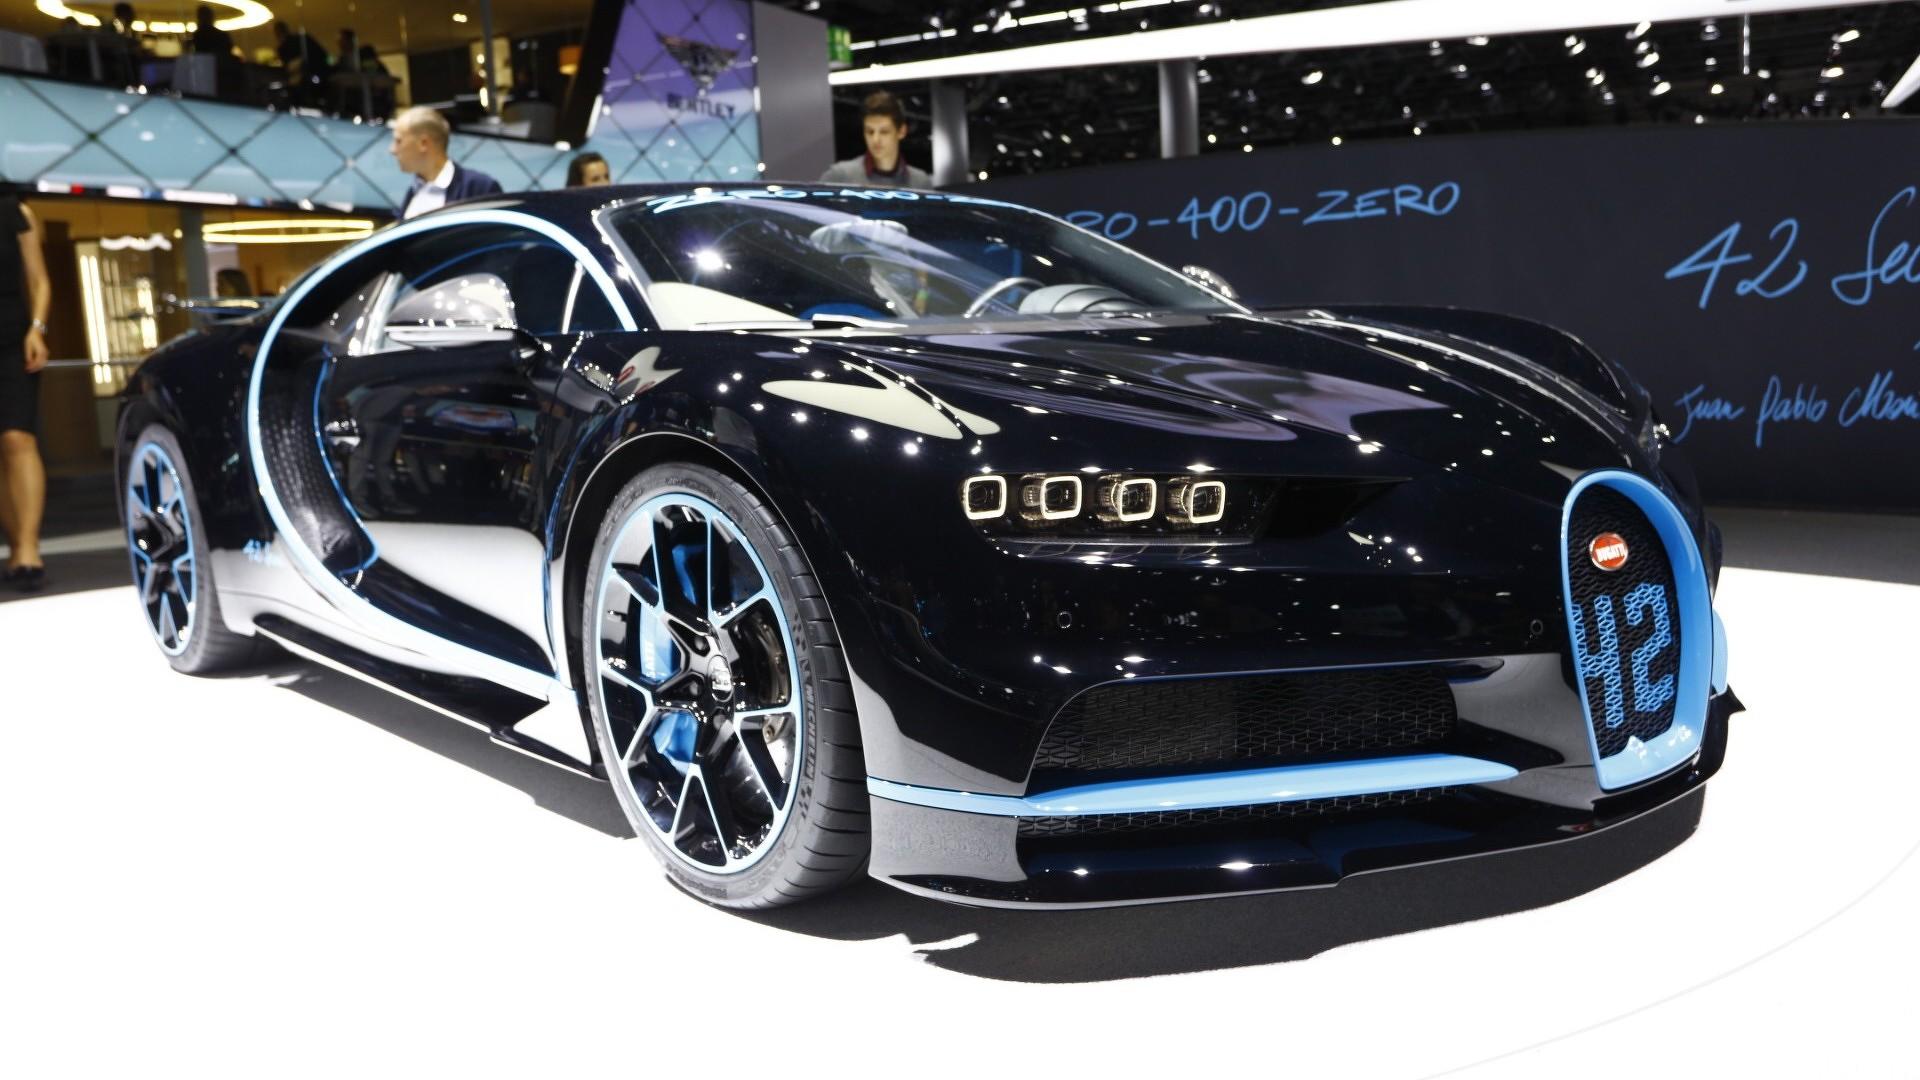 0-400-0 km/h in 42 seconds: Bugatti Chiron sets world record – Bugatti  Newsroom